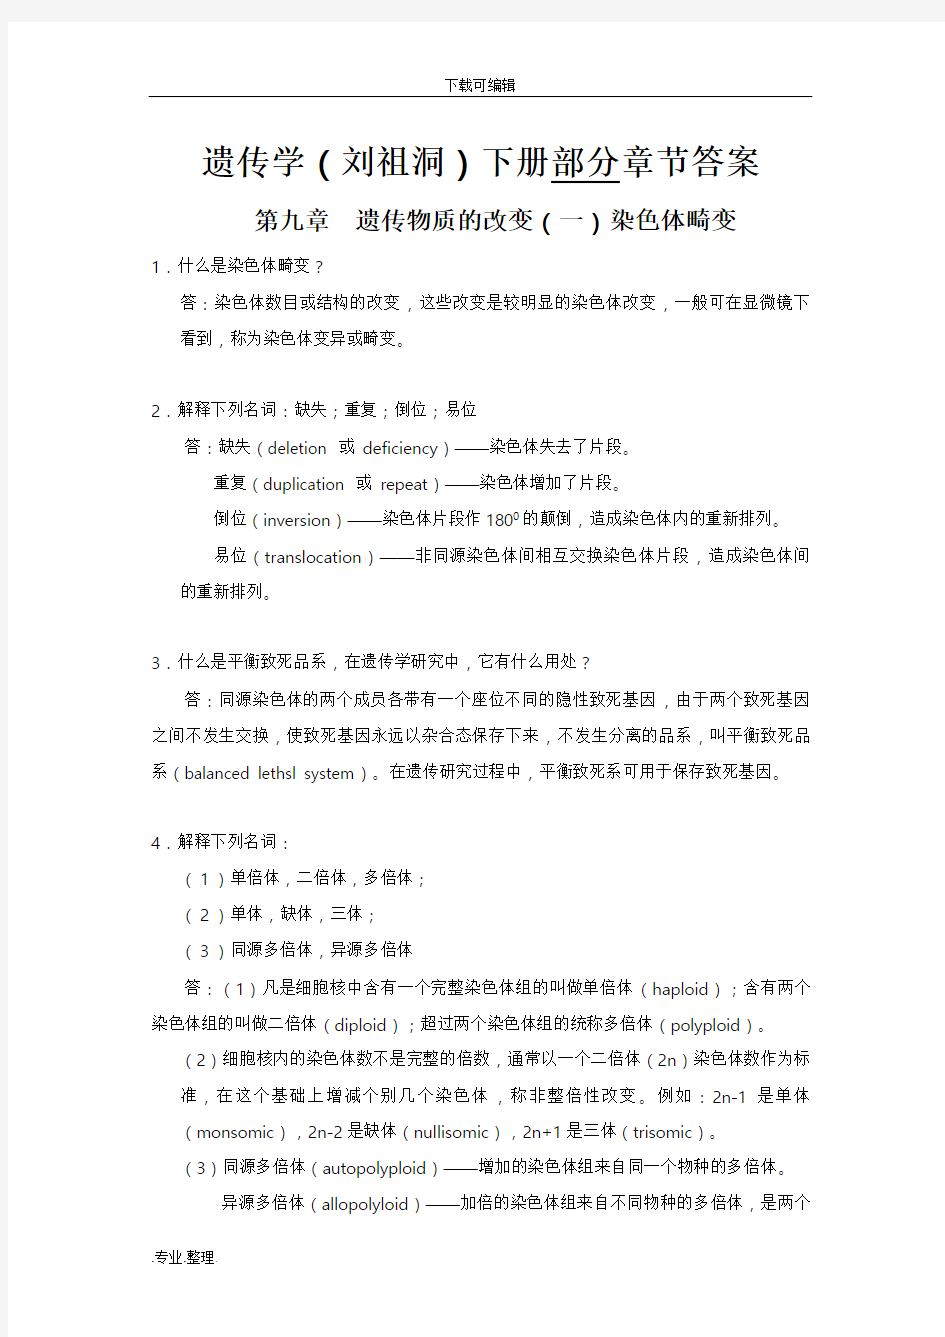 遗传学(刘祖洞)(下册)部分章节答案